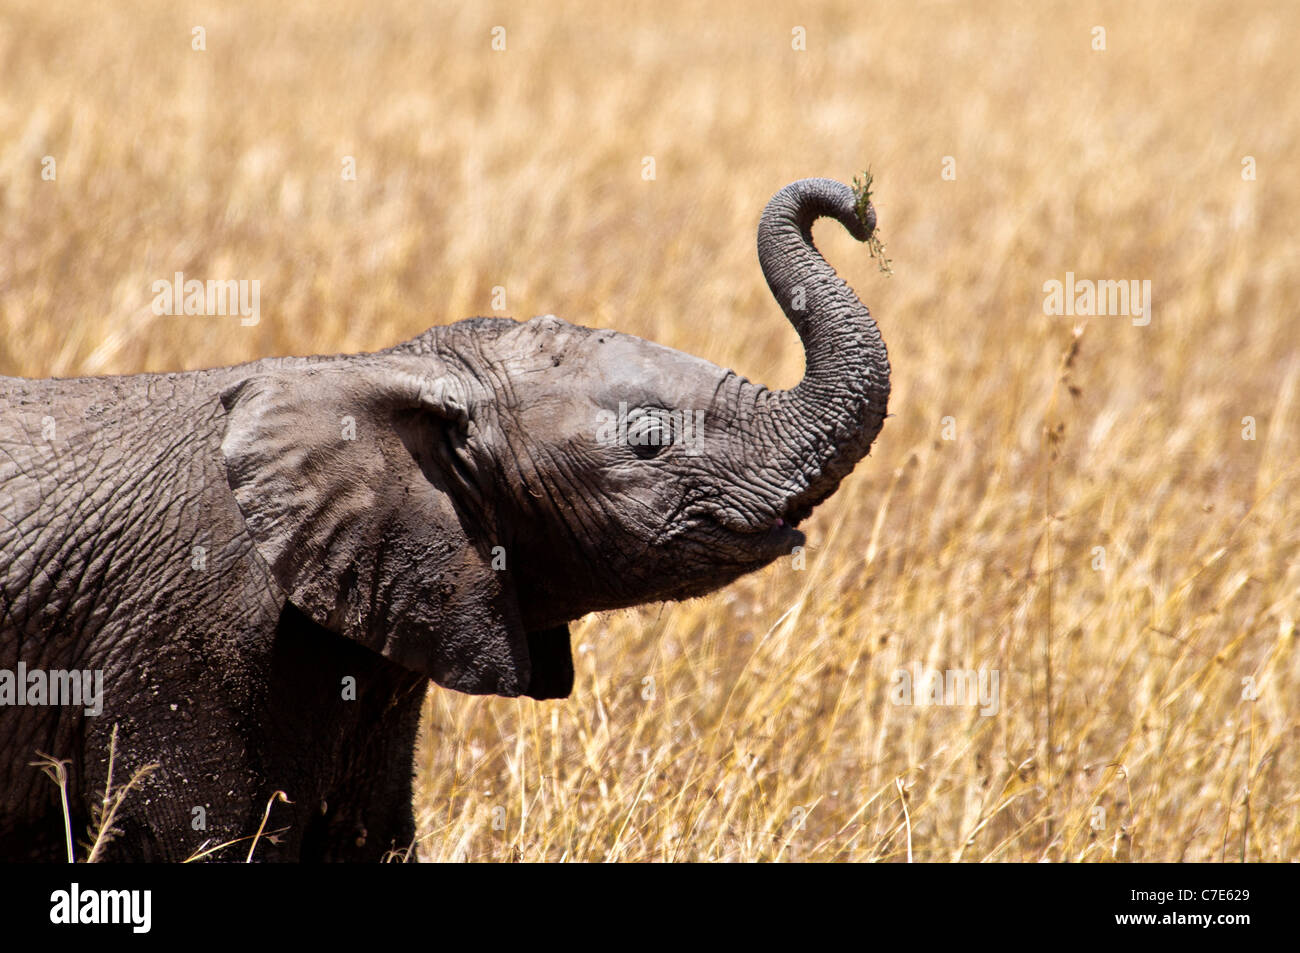 Afrikanische Elefantenbaby, Loxodonta Africana, Stamm angehoben, Masai Mara National Reserve, Kenia, Afrika Stockfoto